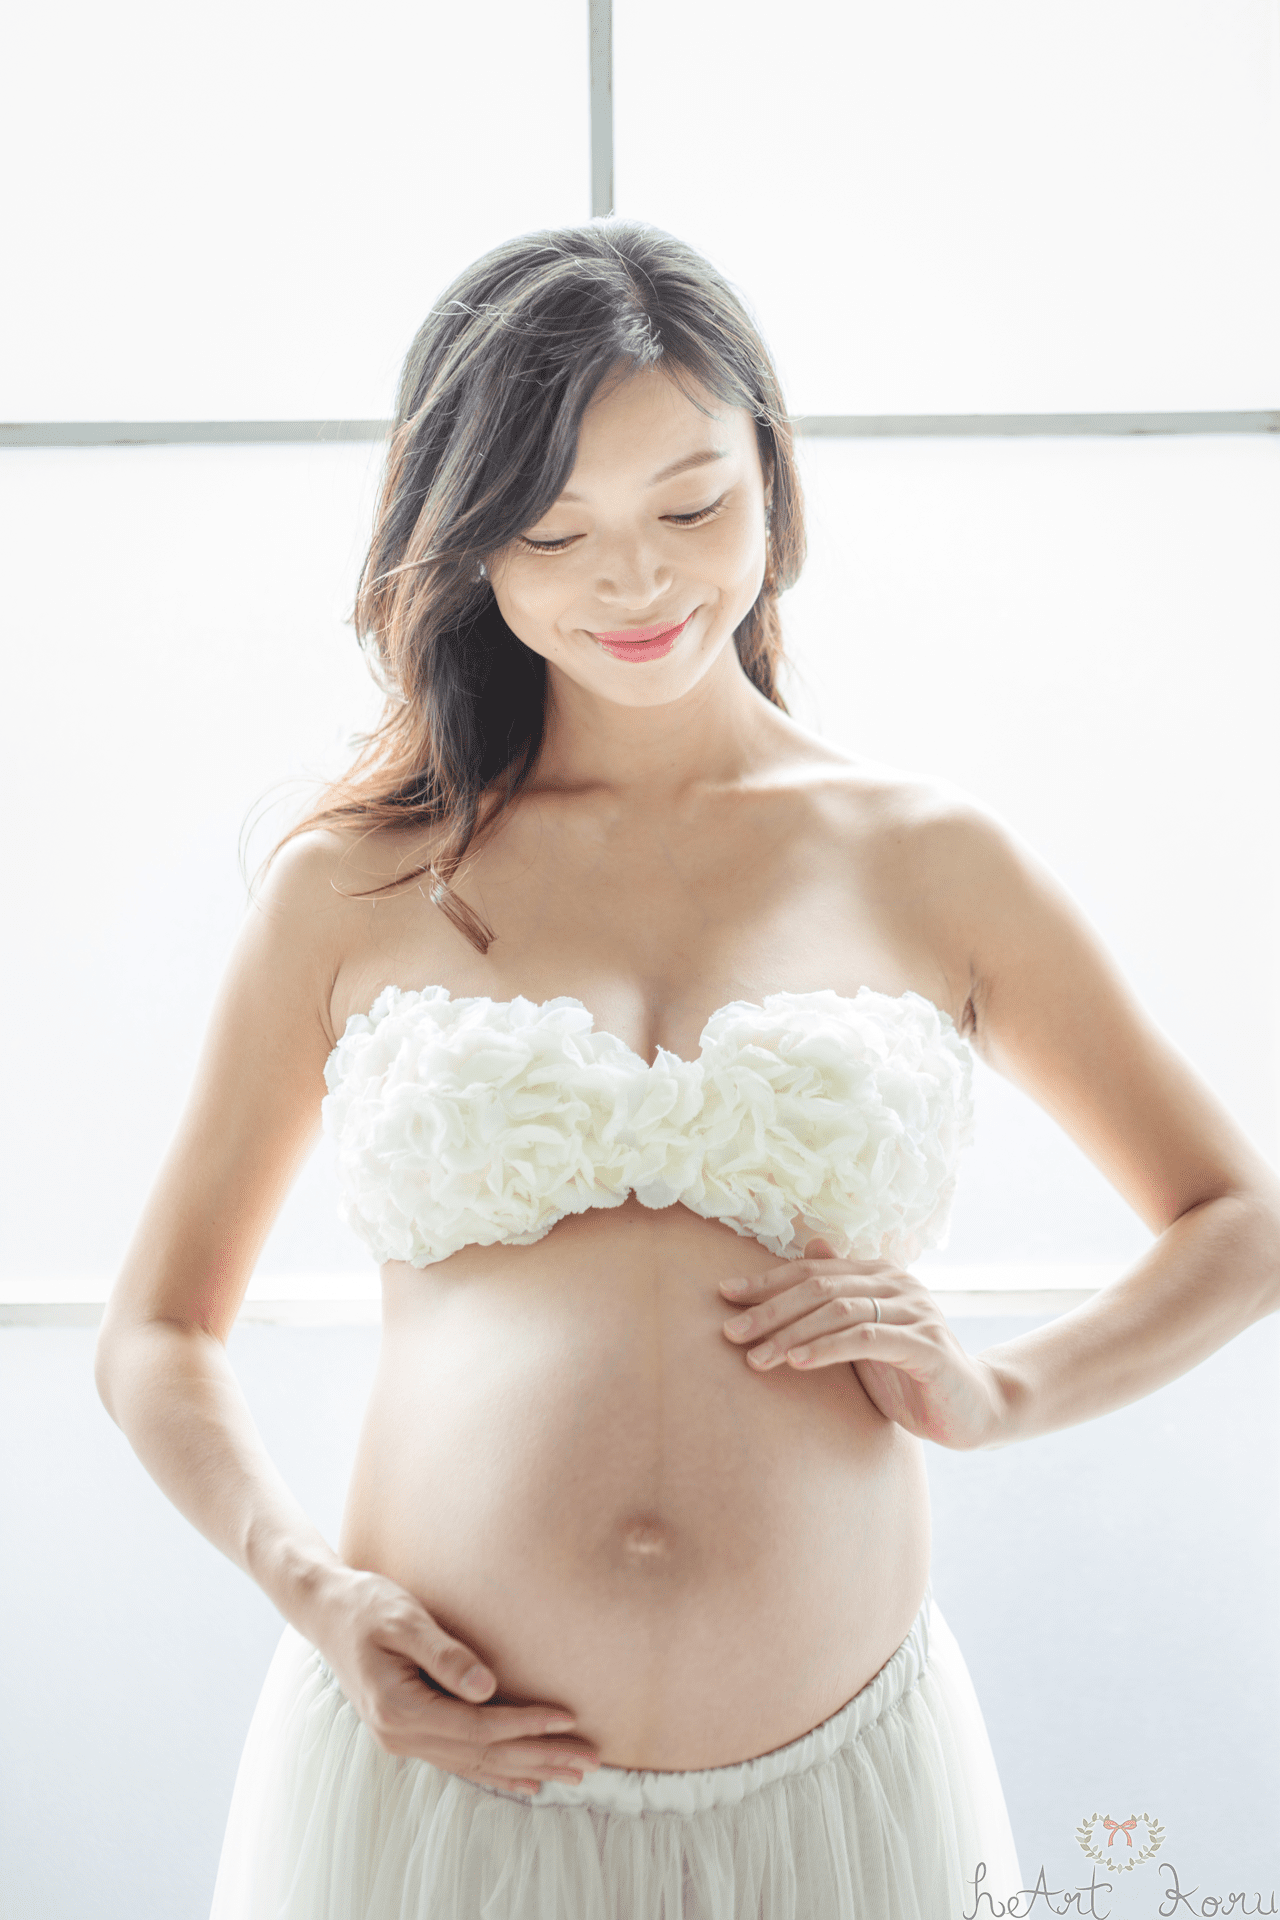 マタニティフォト（ペイント前）。妊婦さんは、ホワイトのブラトップと、ロングスカートのマタニティフォトの衣装を着ている。妊婦さんが、優しく両手をお腹の赤ちゃんを守るように手を添えているマタニティ写真。美しい自然光マタニティ撮影。